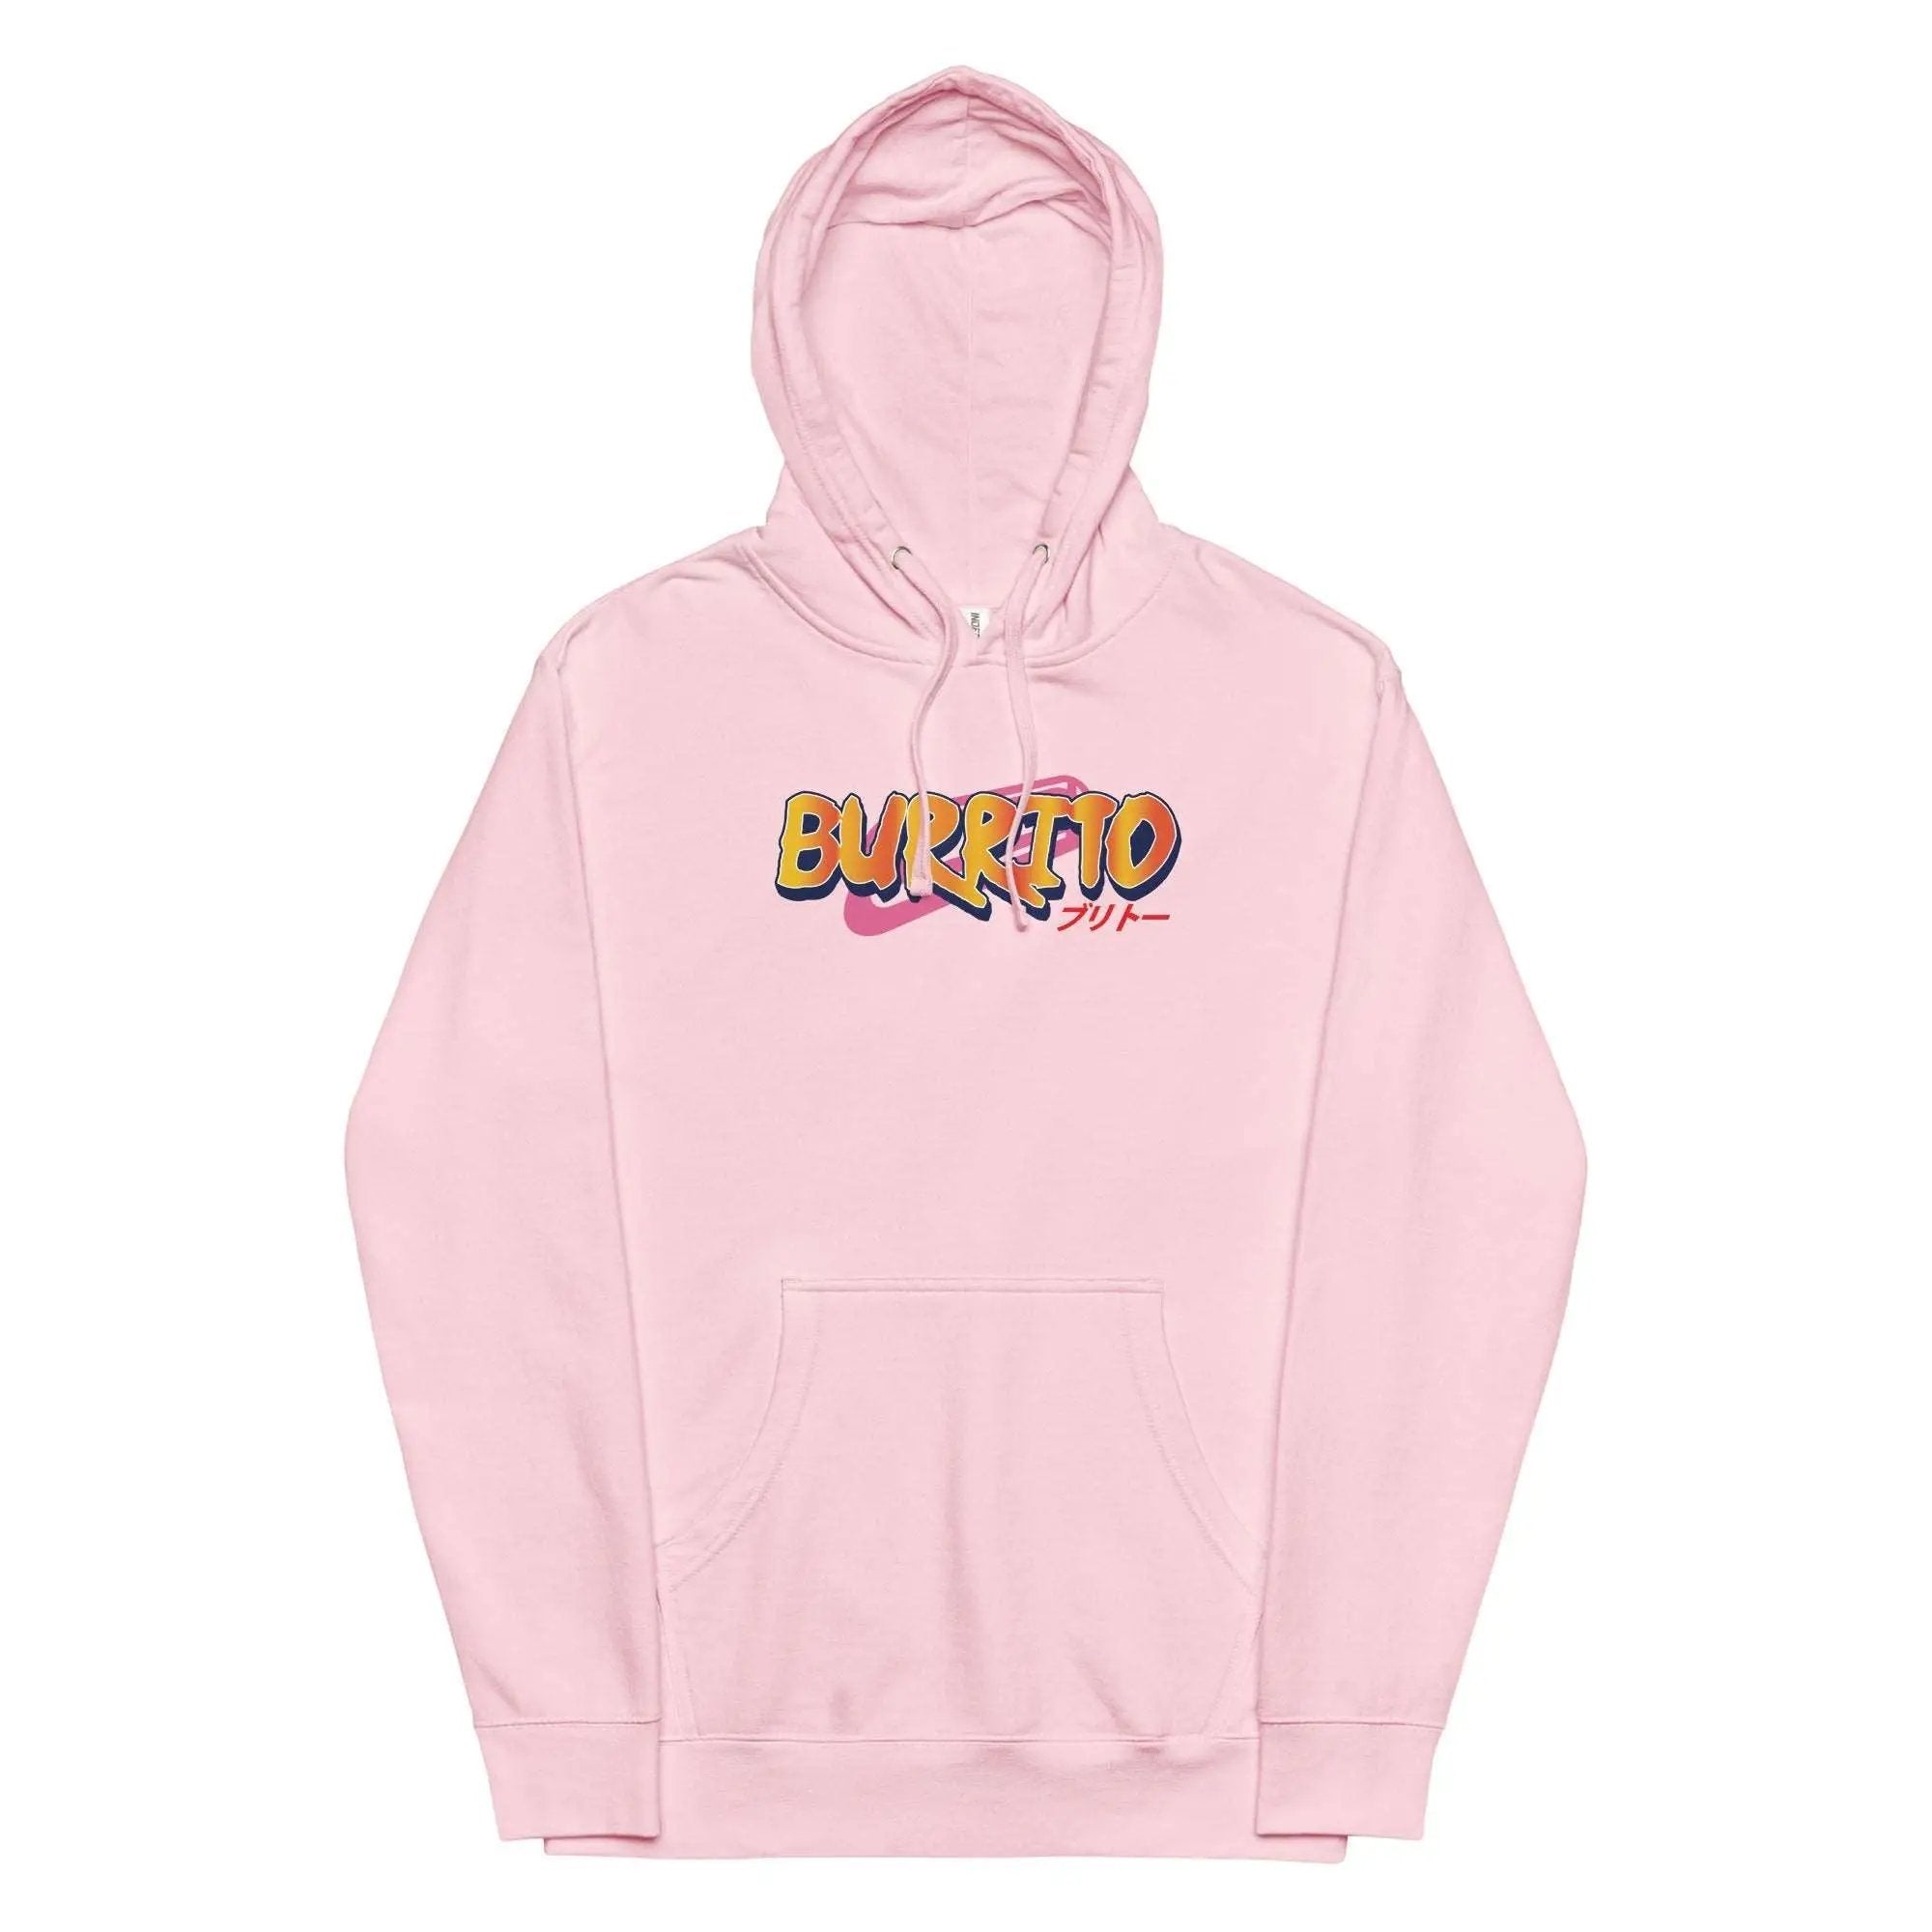 Burrito Unisex midweight hoodie